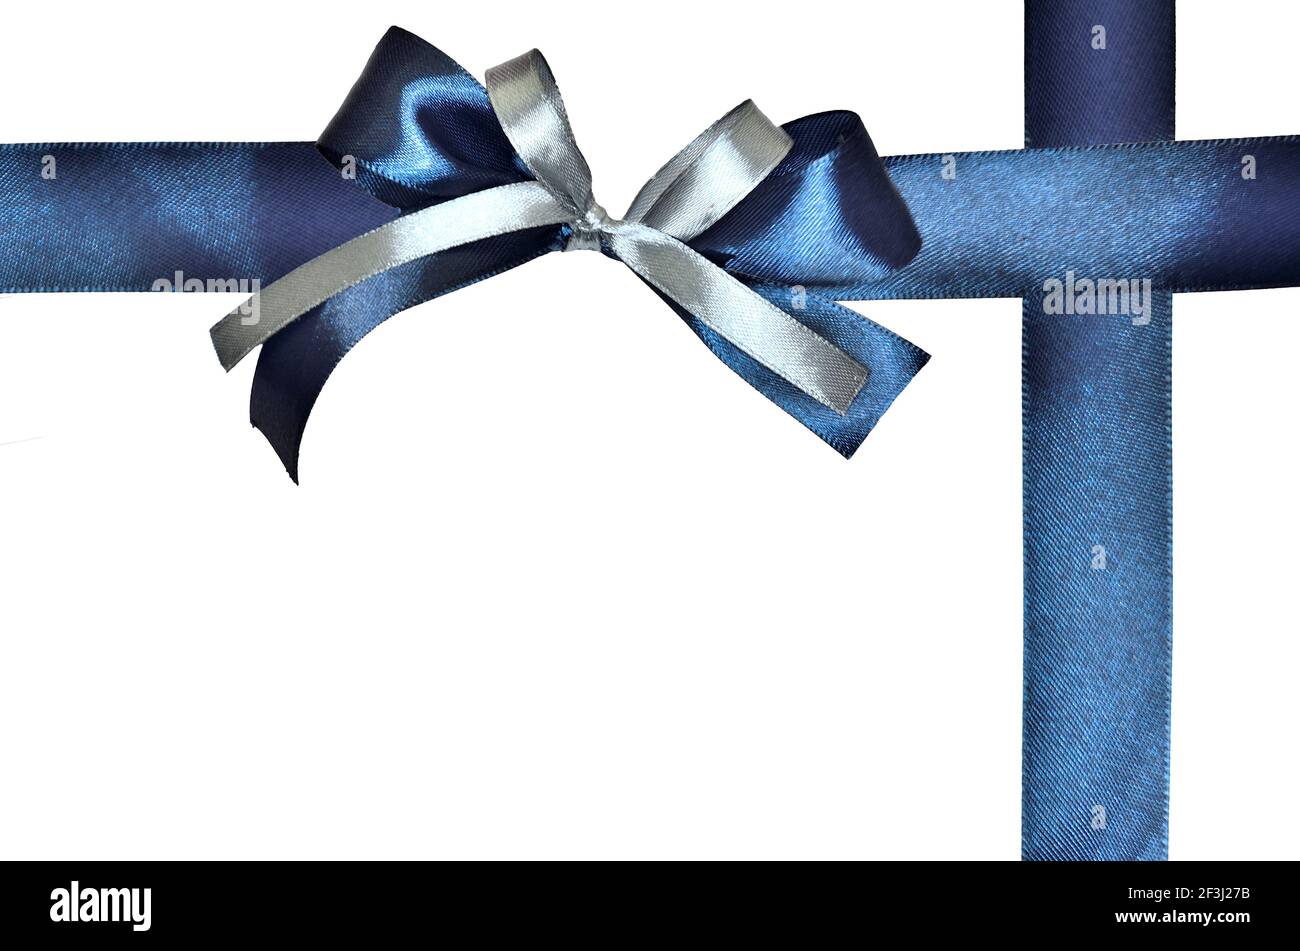 Bel nastro di seta blu e archi in argento e blu per avvolgere regalo isolato su sfondo bianco. Archi decorativi per confezioni presenti per qualsiasi tipo di sete Foto Stock